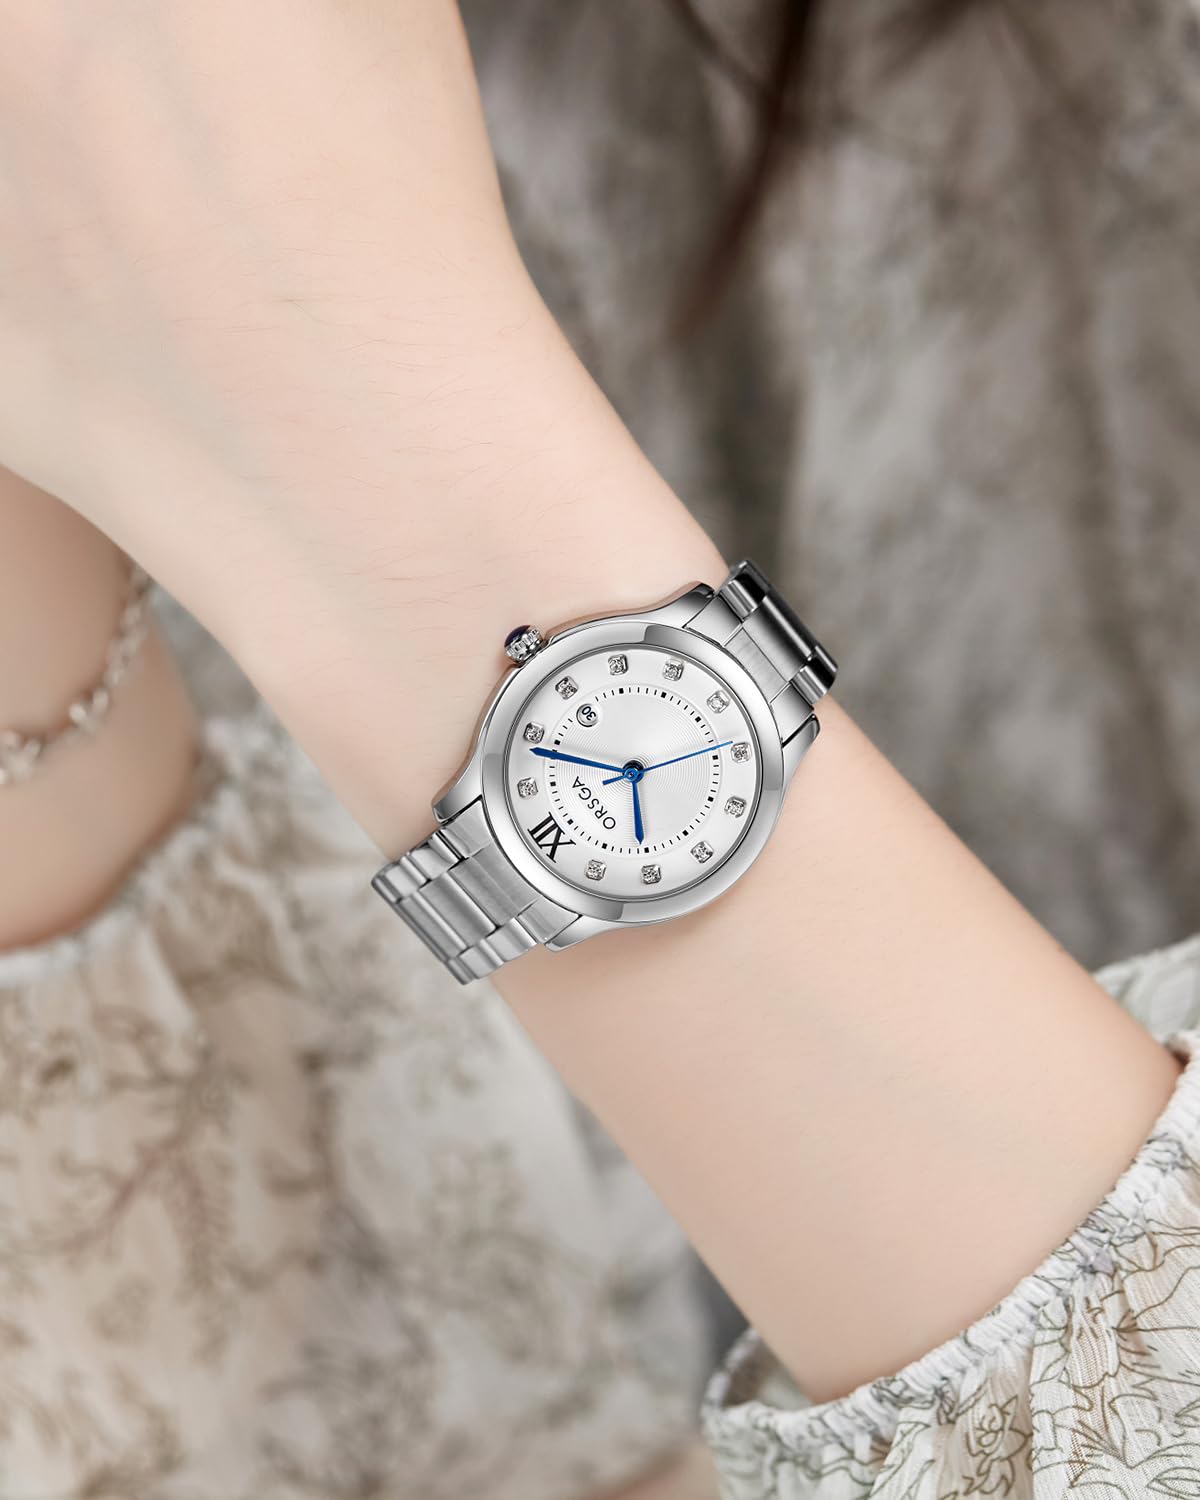 CIVO Paar Uhr Silber Edelstahl Minimalistic Analog Armbanduhr Damen und Herren Designer Wasserdicht Datum Quarz Uhren, Geschenke für Paare